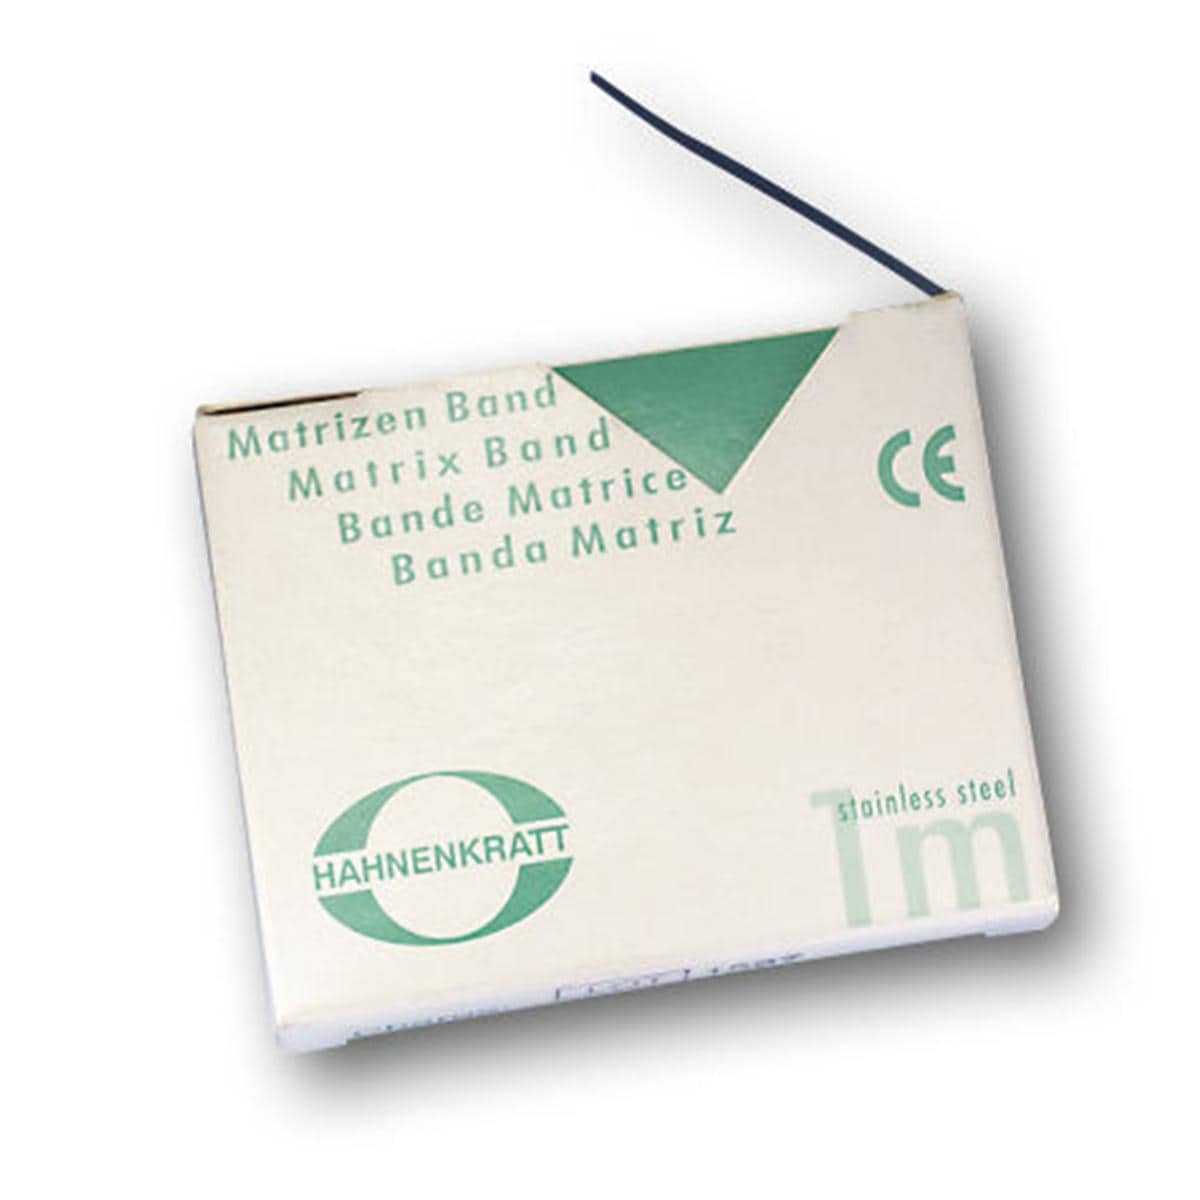 Matrizenband Hahnenkratt - Rolle 10 m - Breite 4 mm, Stärke 0,03 mm